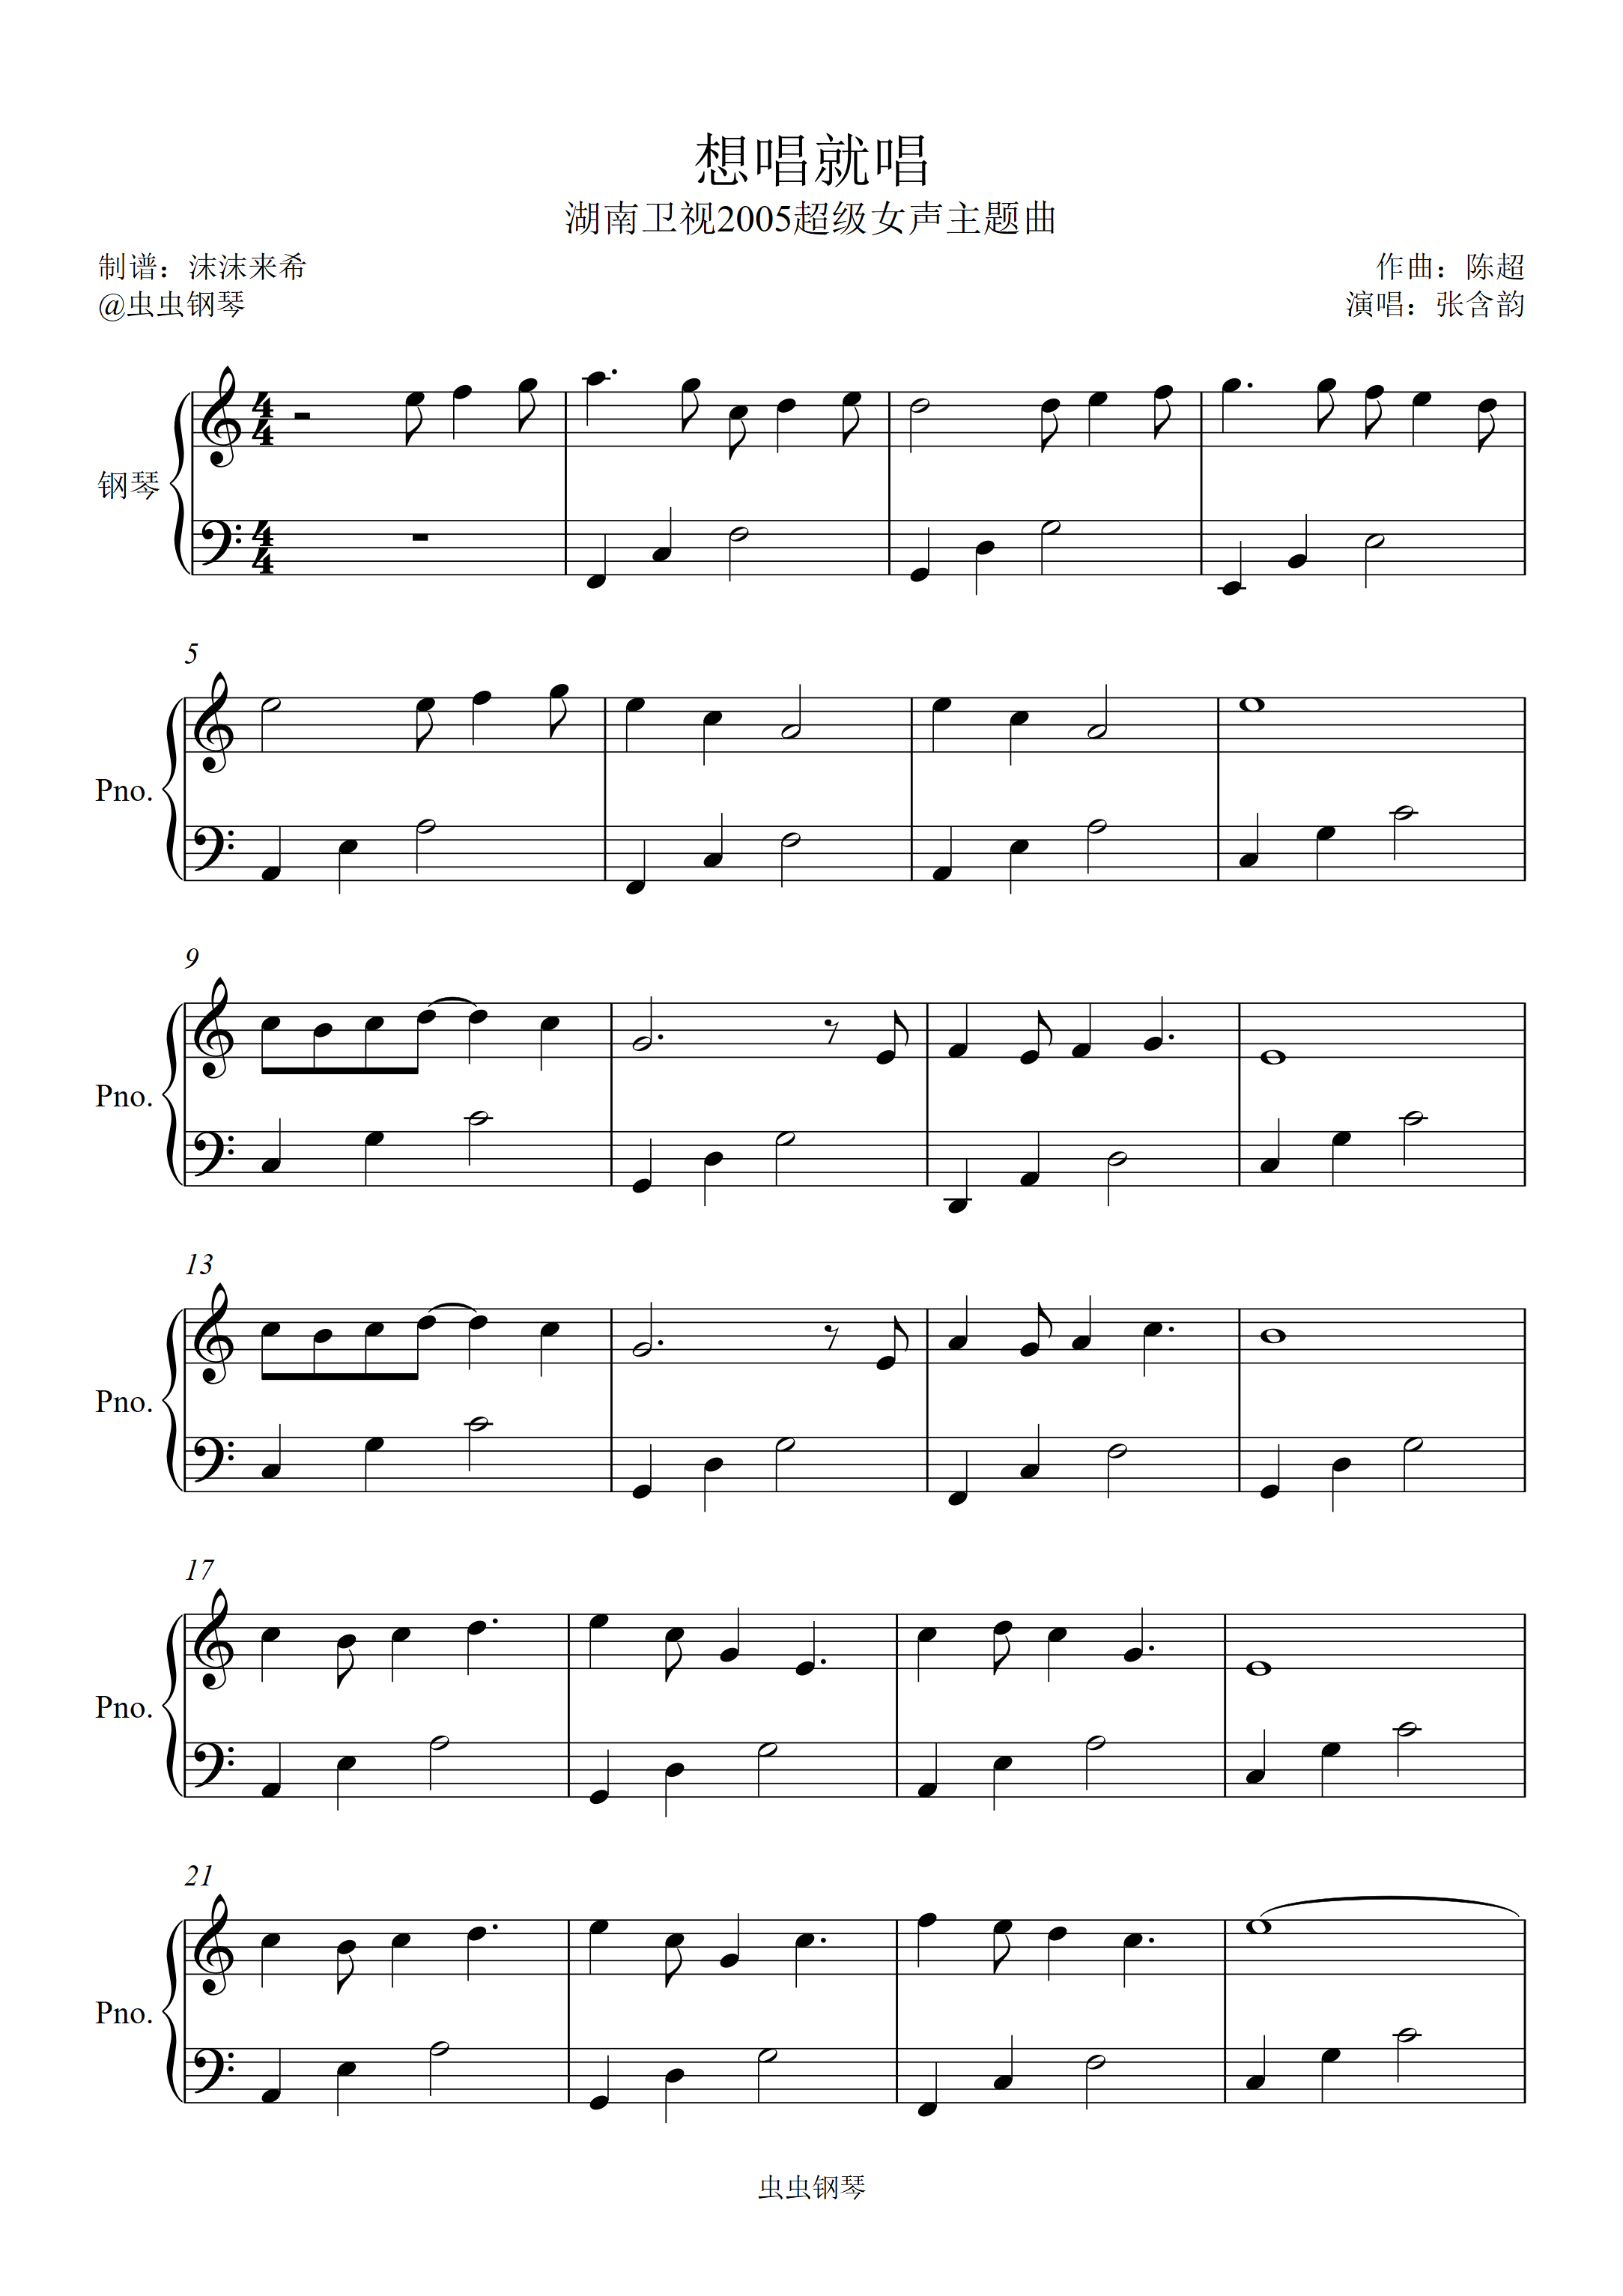 想唱就唱-张含韵双手简谱预览2-钢琴谱文件（五线谱、双手简谱、数字谱、Midi、PDF）免费下载